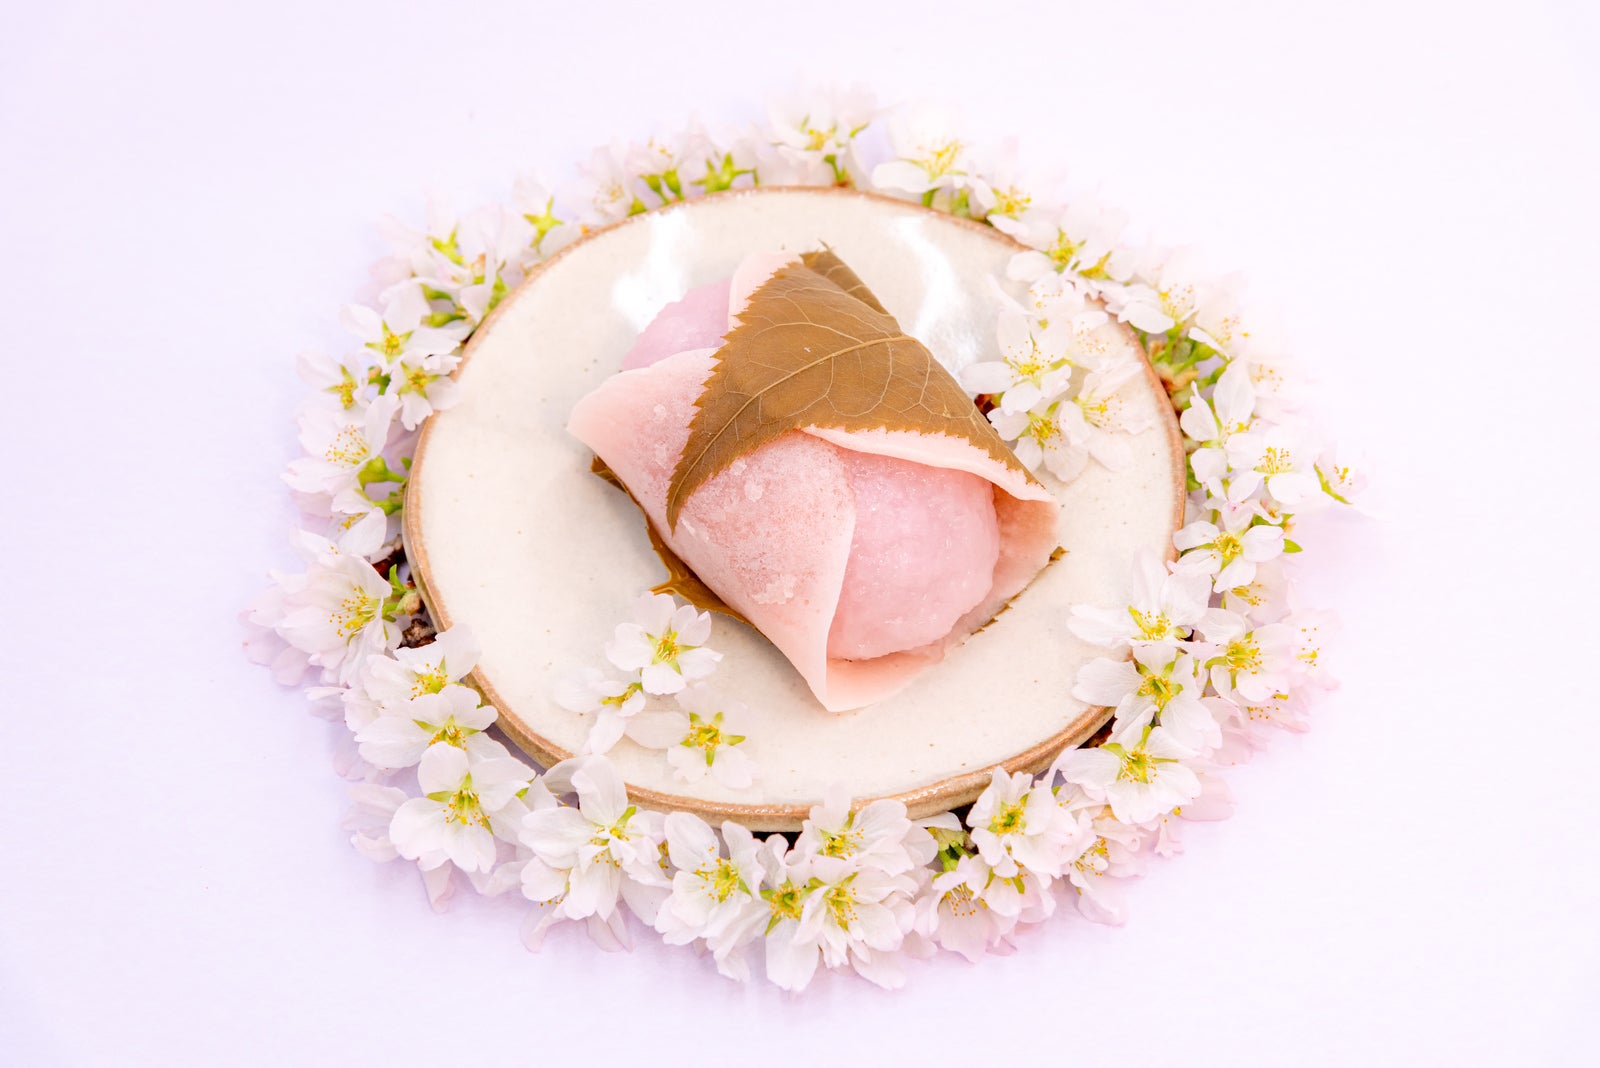 「お皿に盛り付けられたキメラ桜もち」の写真